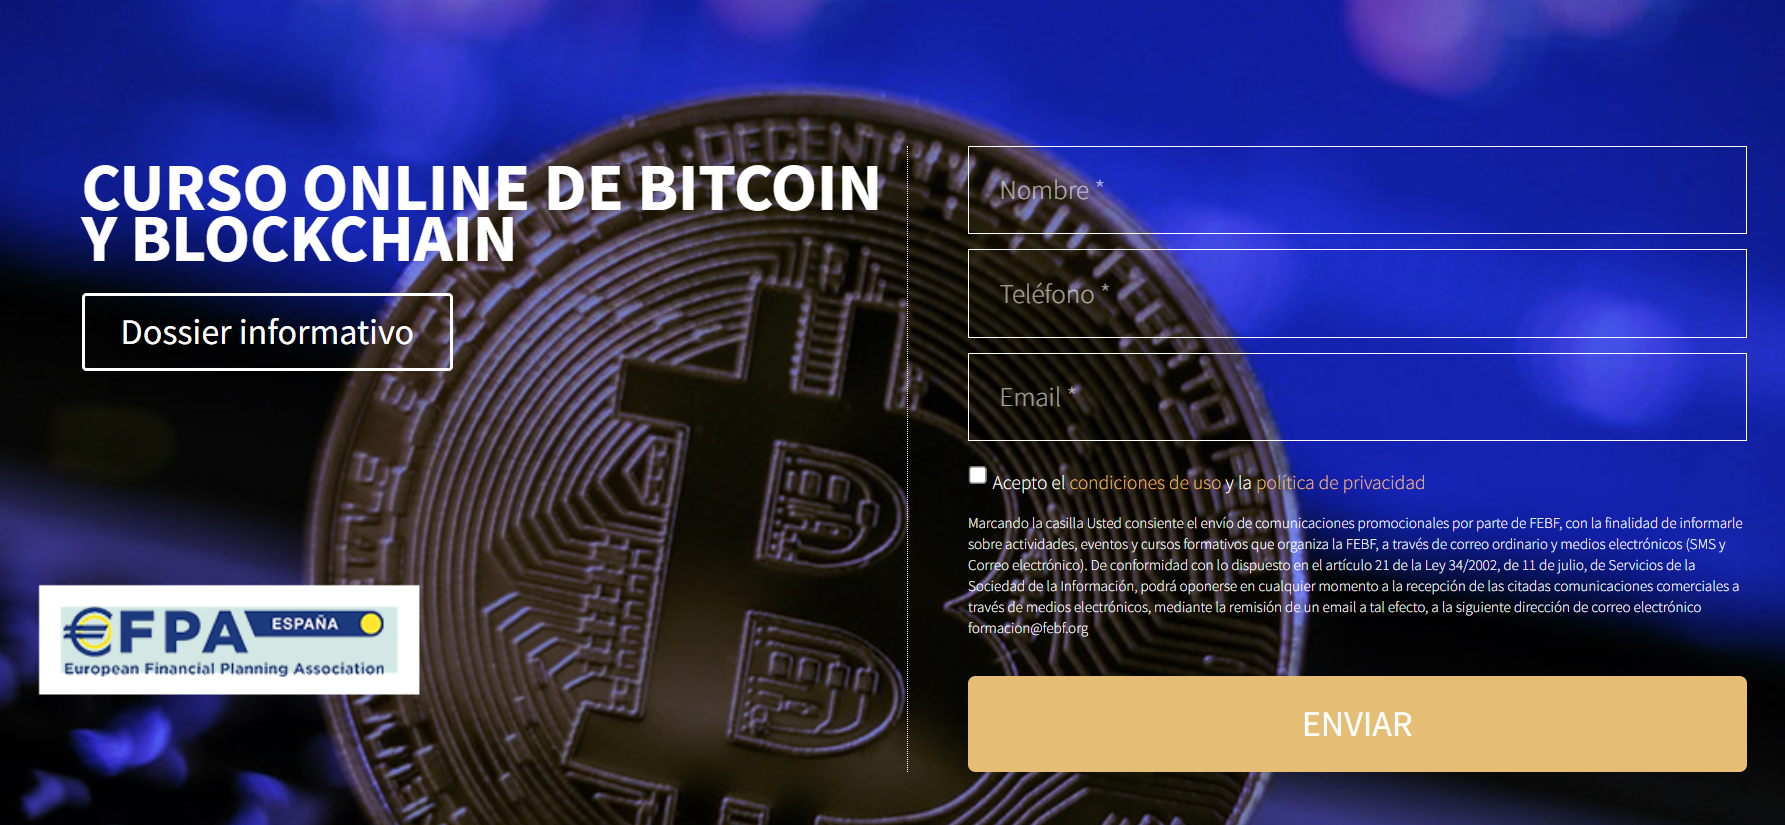 Información sobre Curso Online de Bitcoin y Blockchain